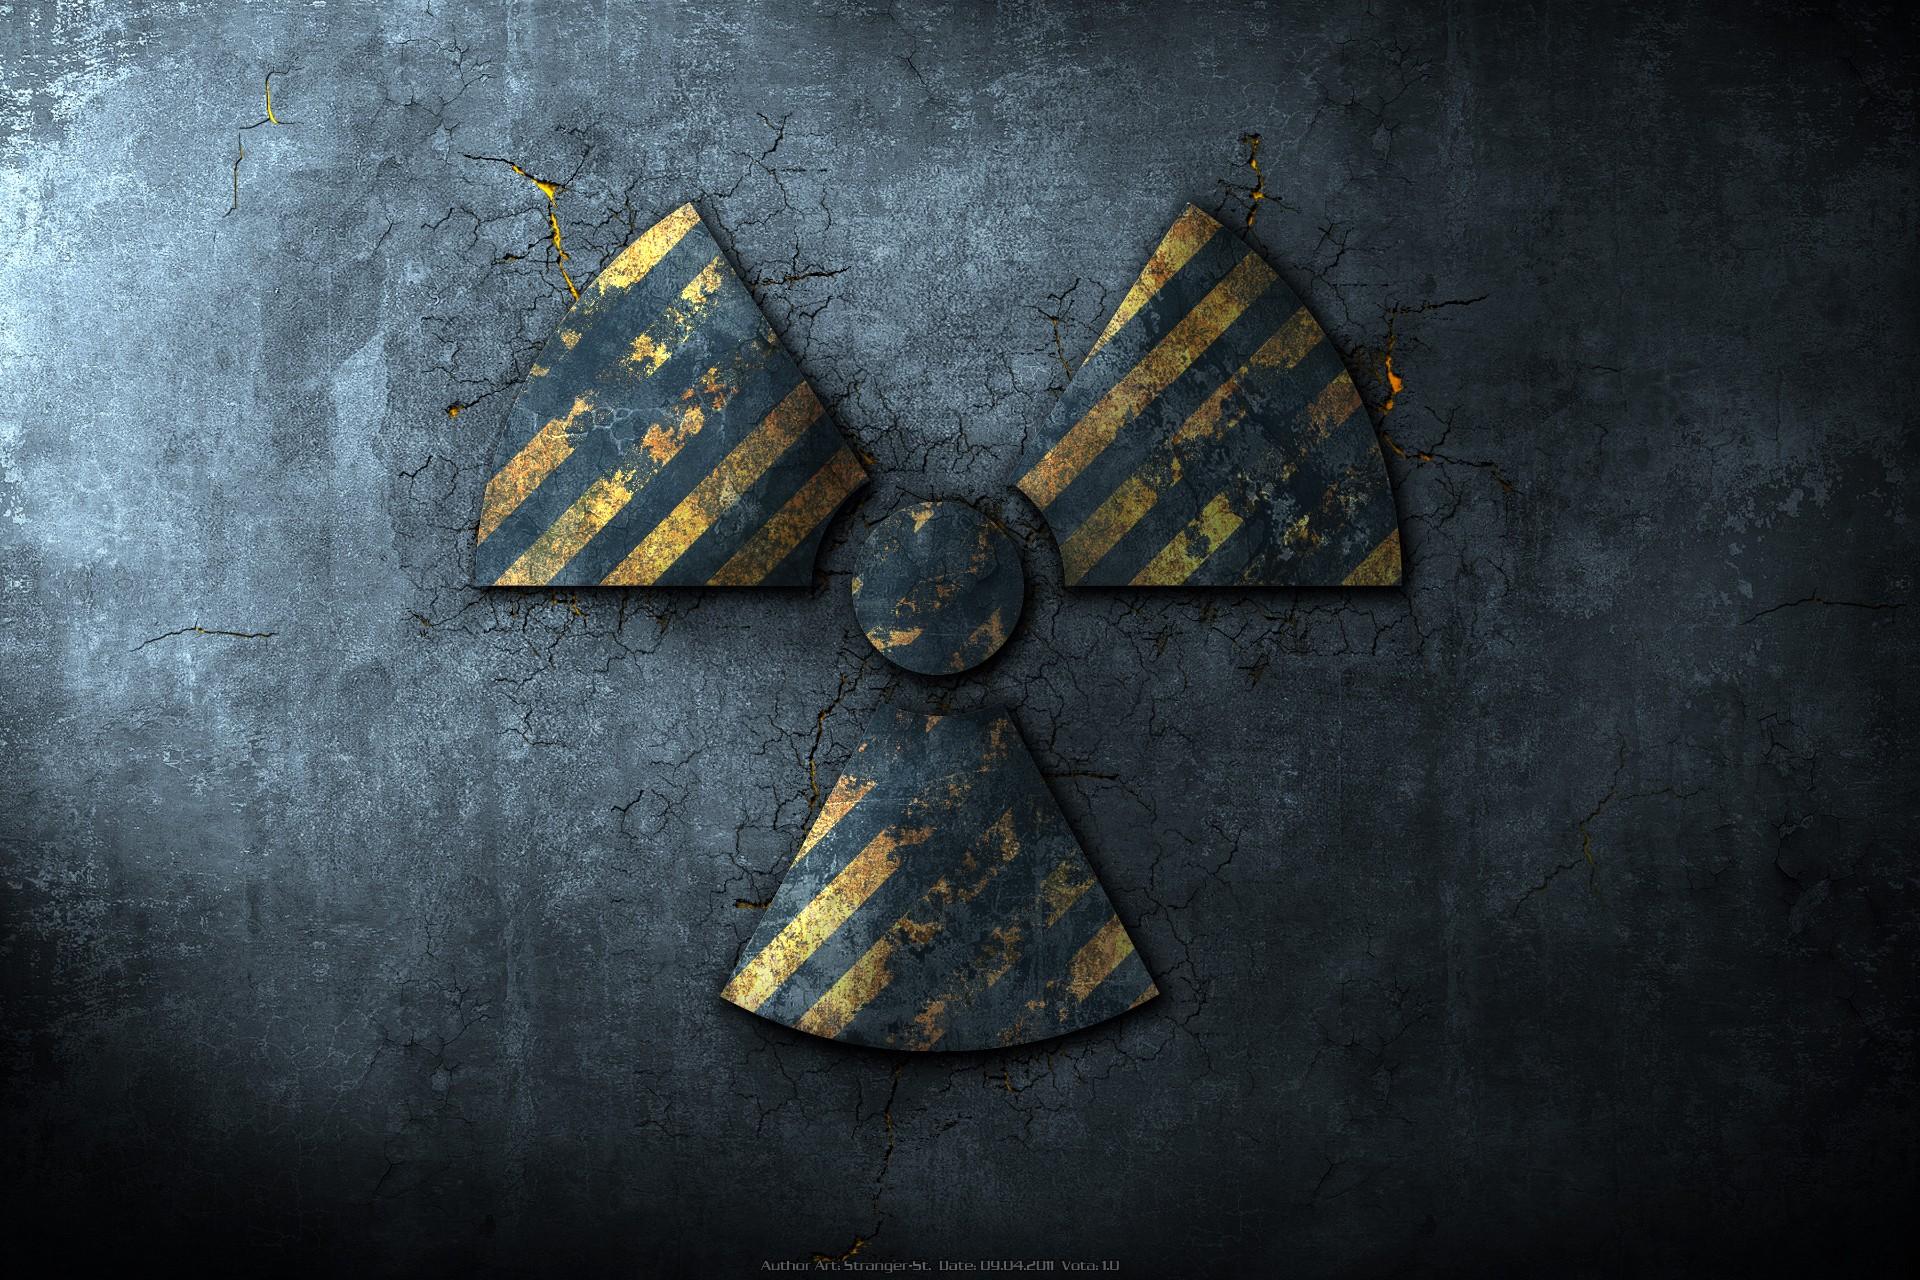 Radiation Symbol Wallpaper